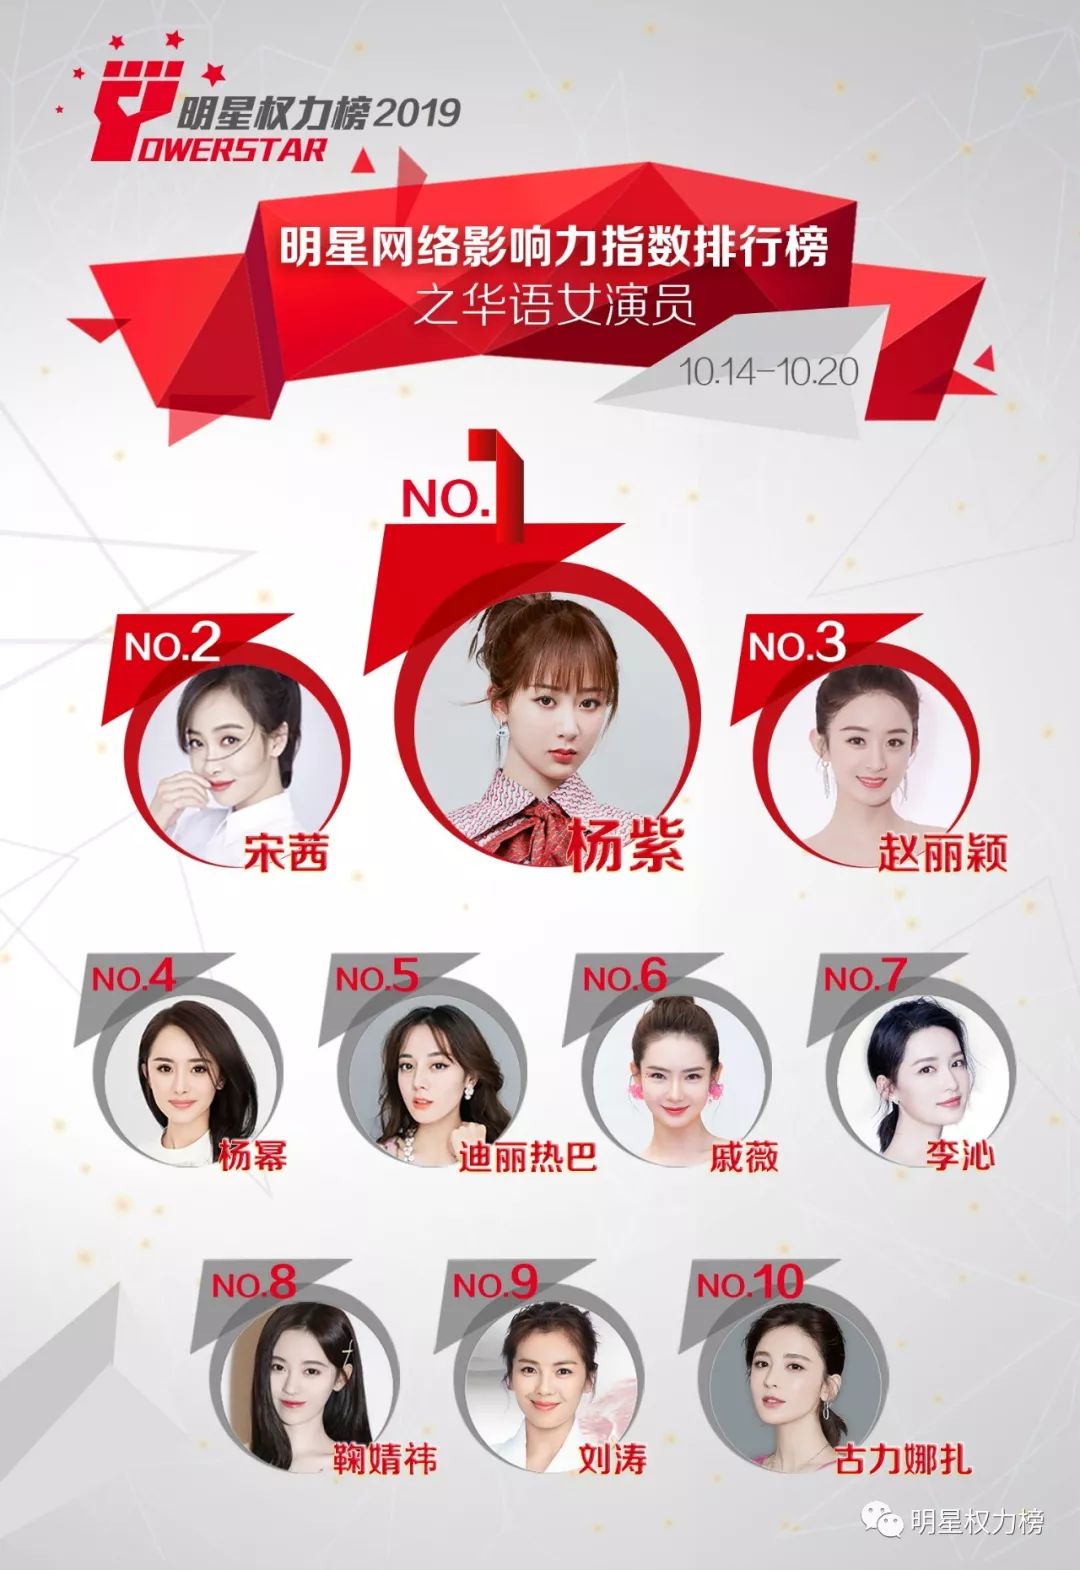 明星网络影响力指数排行榜第221期榜单之华语女演员Top10